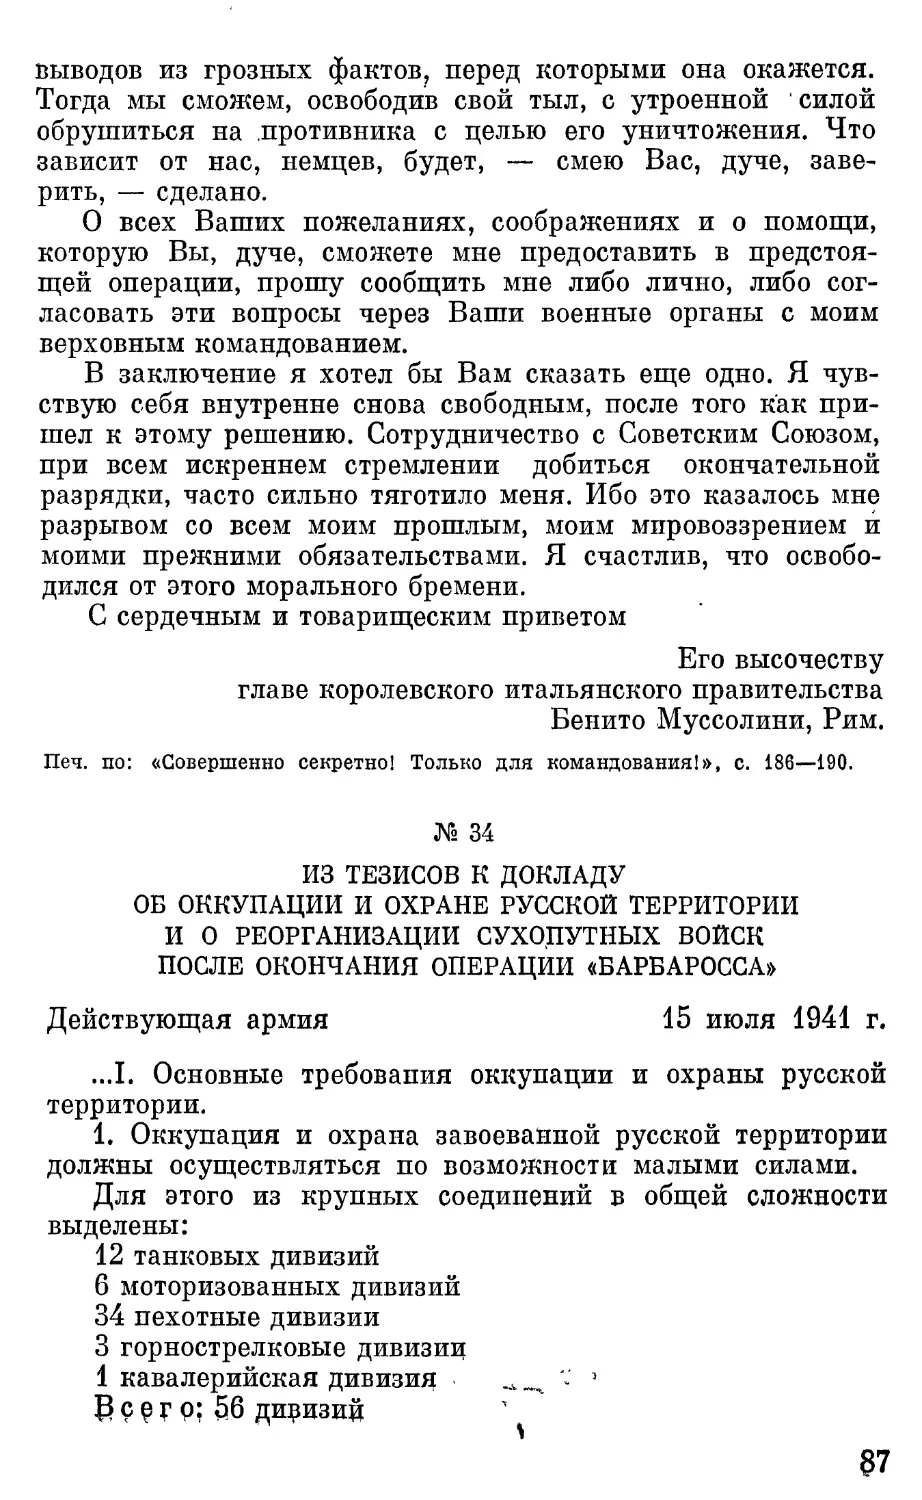 Из тезисов к докладу об оккупации и охране русской территории и о реорганизации сухопутных войск после окончания операции «Барбаросса».